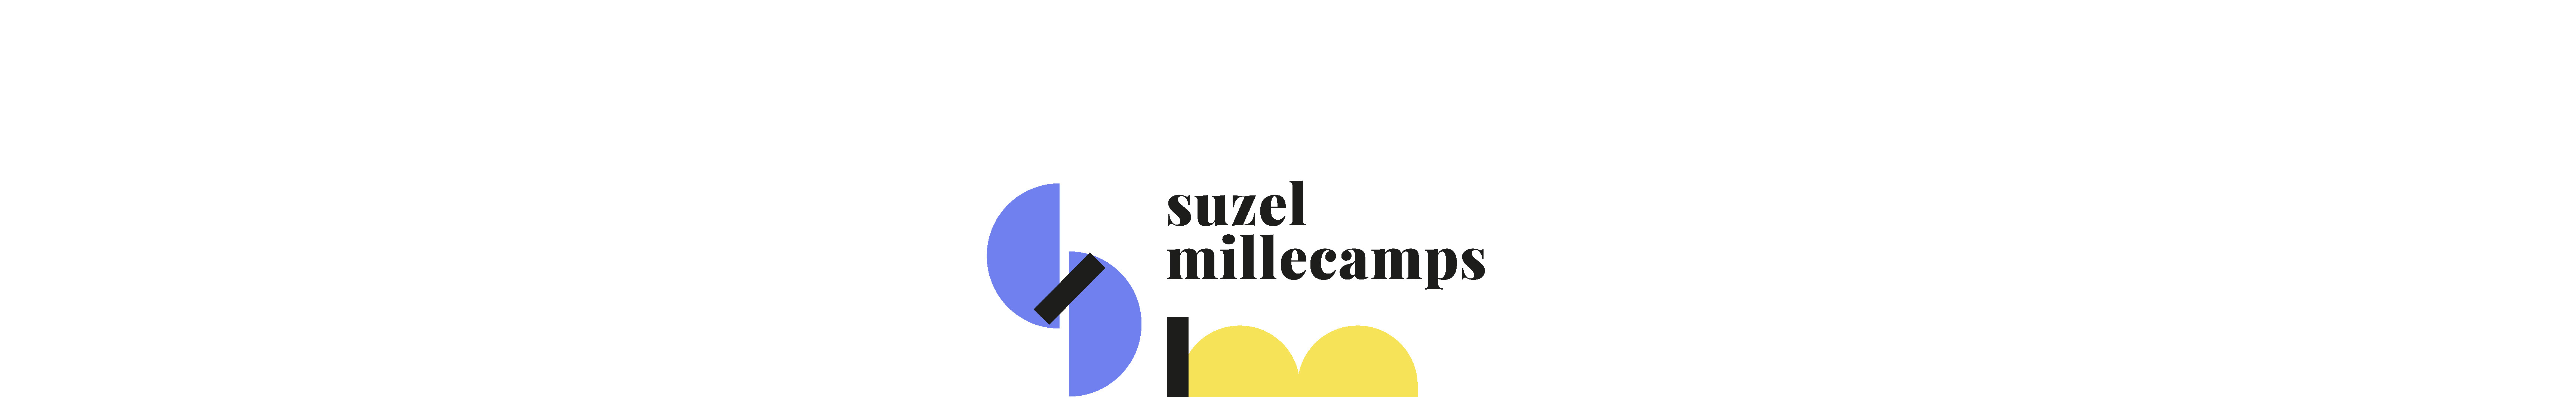 Suzel Millecamps's profile banner